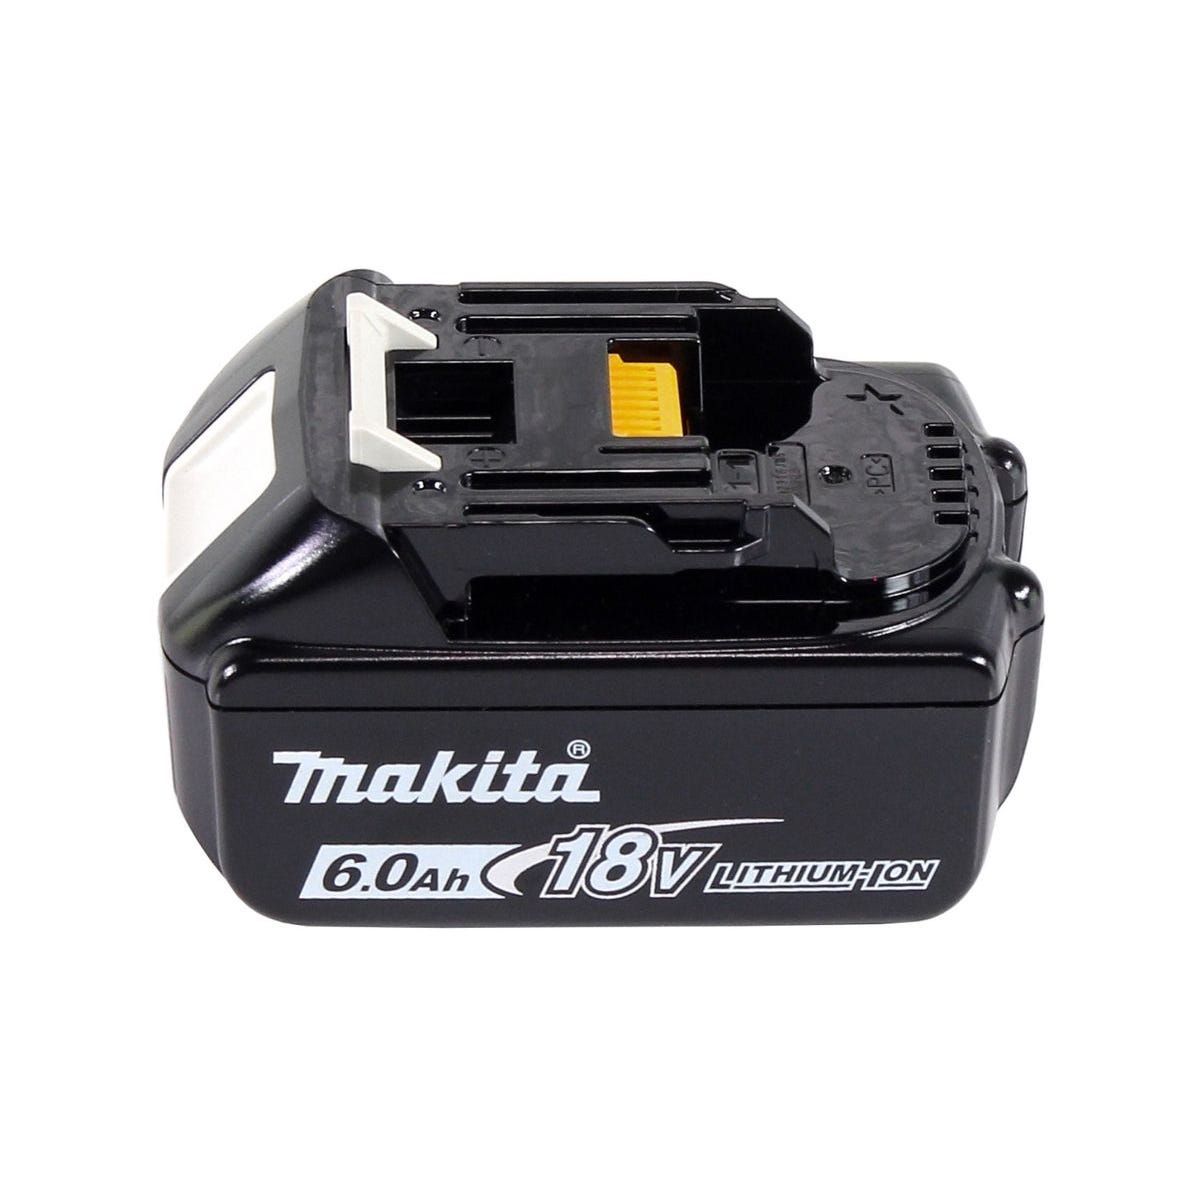 Makita DFS 251 G1J Visseuse pour cloisons sèches sans fil Brushless 18V + 1x Batterie 6,0Ah + Coffret Makpac - sans chargeur 3